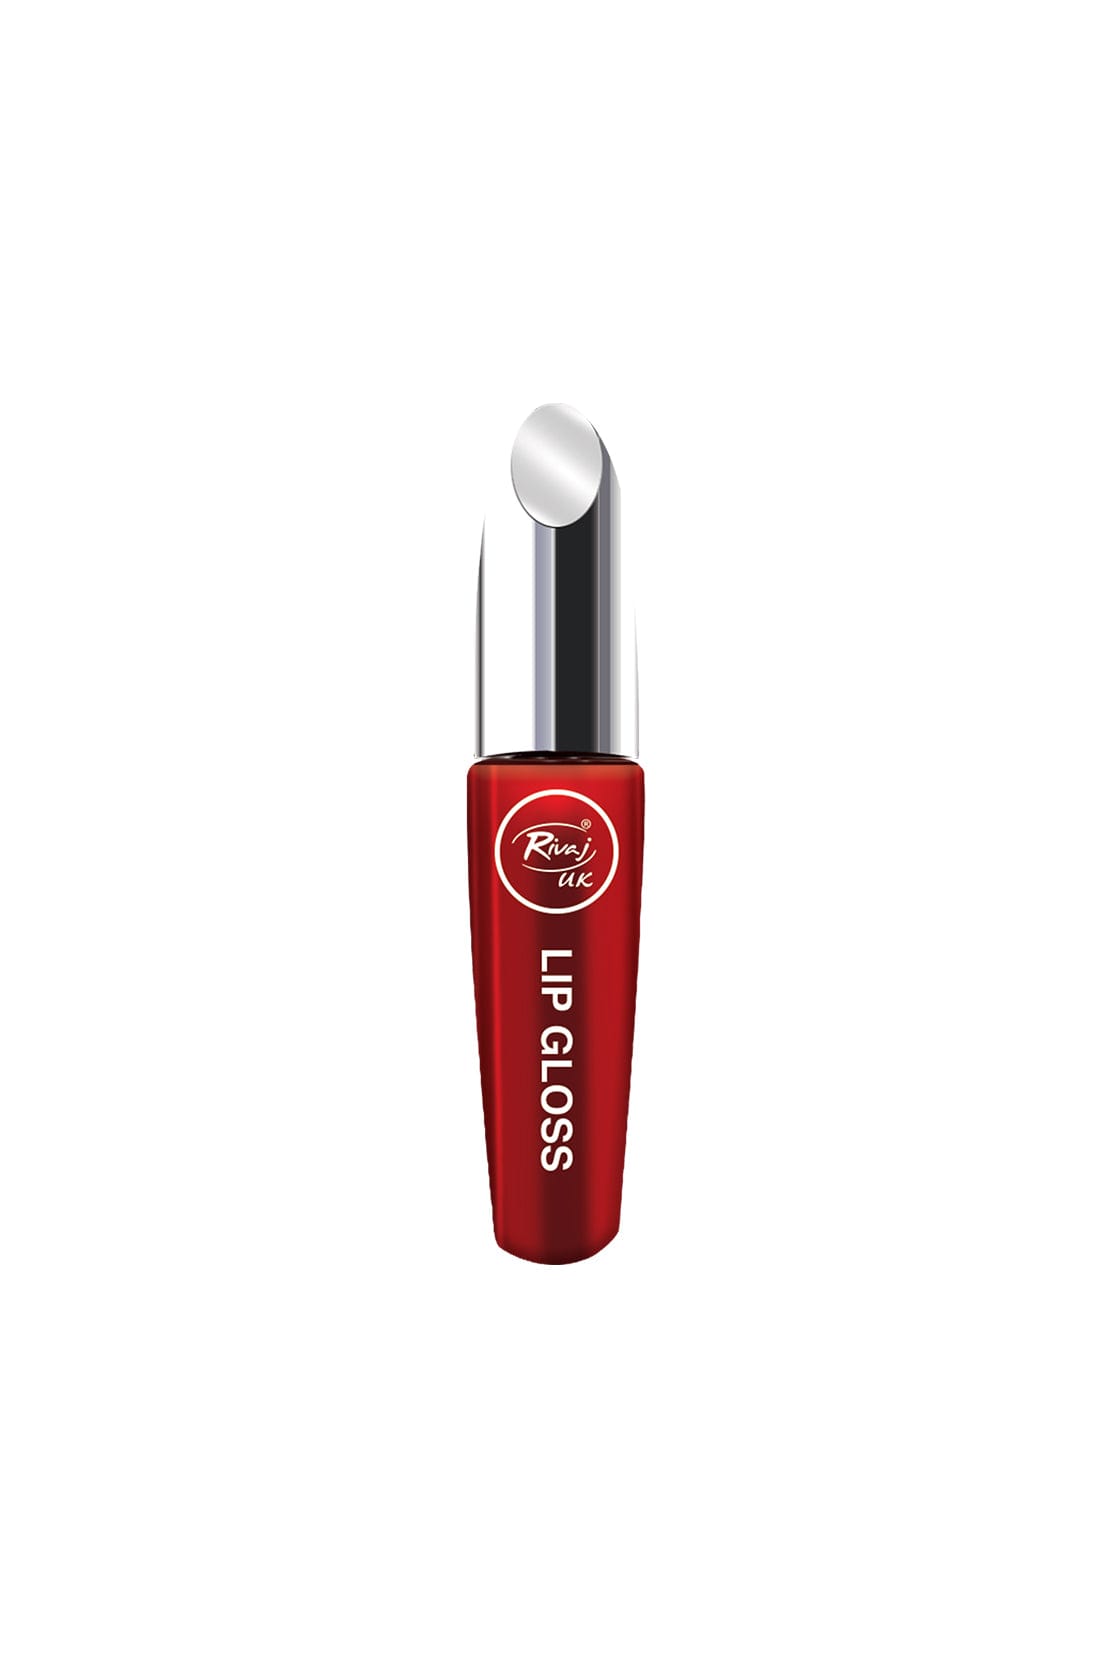 Rivaj UK Cosmetics All Day Intense Color Lip Gloss Color #01